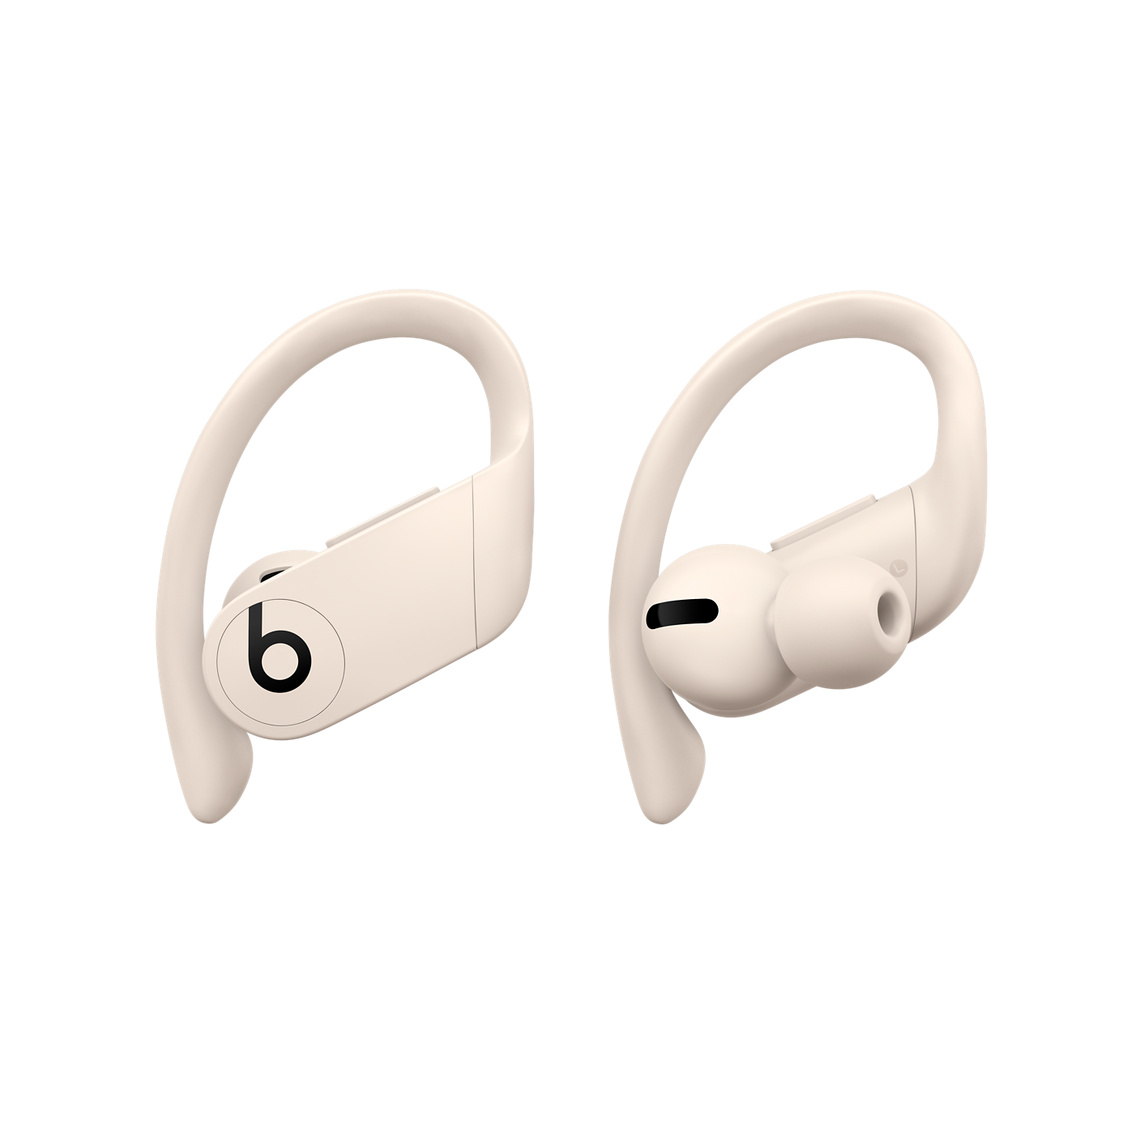 Powerbeats Pro komplett kabellose In-Ear Kopfhörer in Elfenbein mit anpassbaren Ohrbügeln für sicheren Halt, die sich mit mehreren Ohreinsätzen für noch mehr Tragekomfort anpassen lassen.